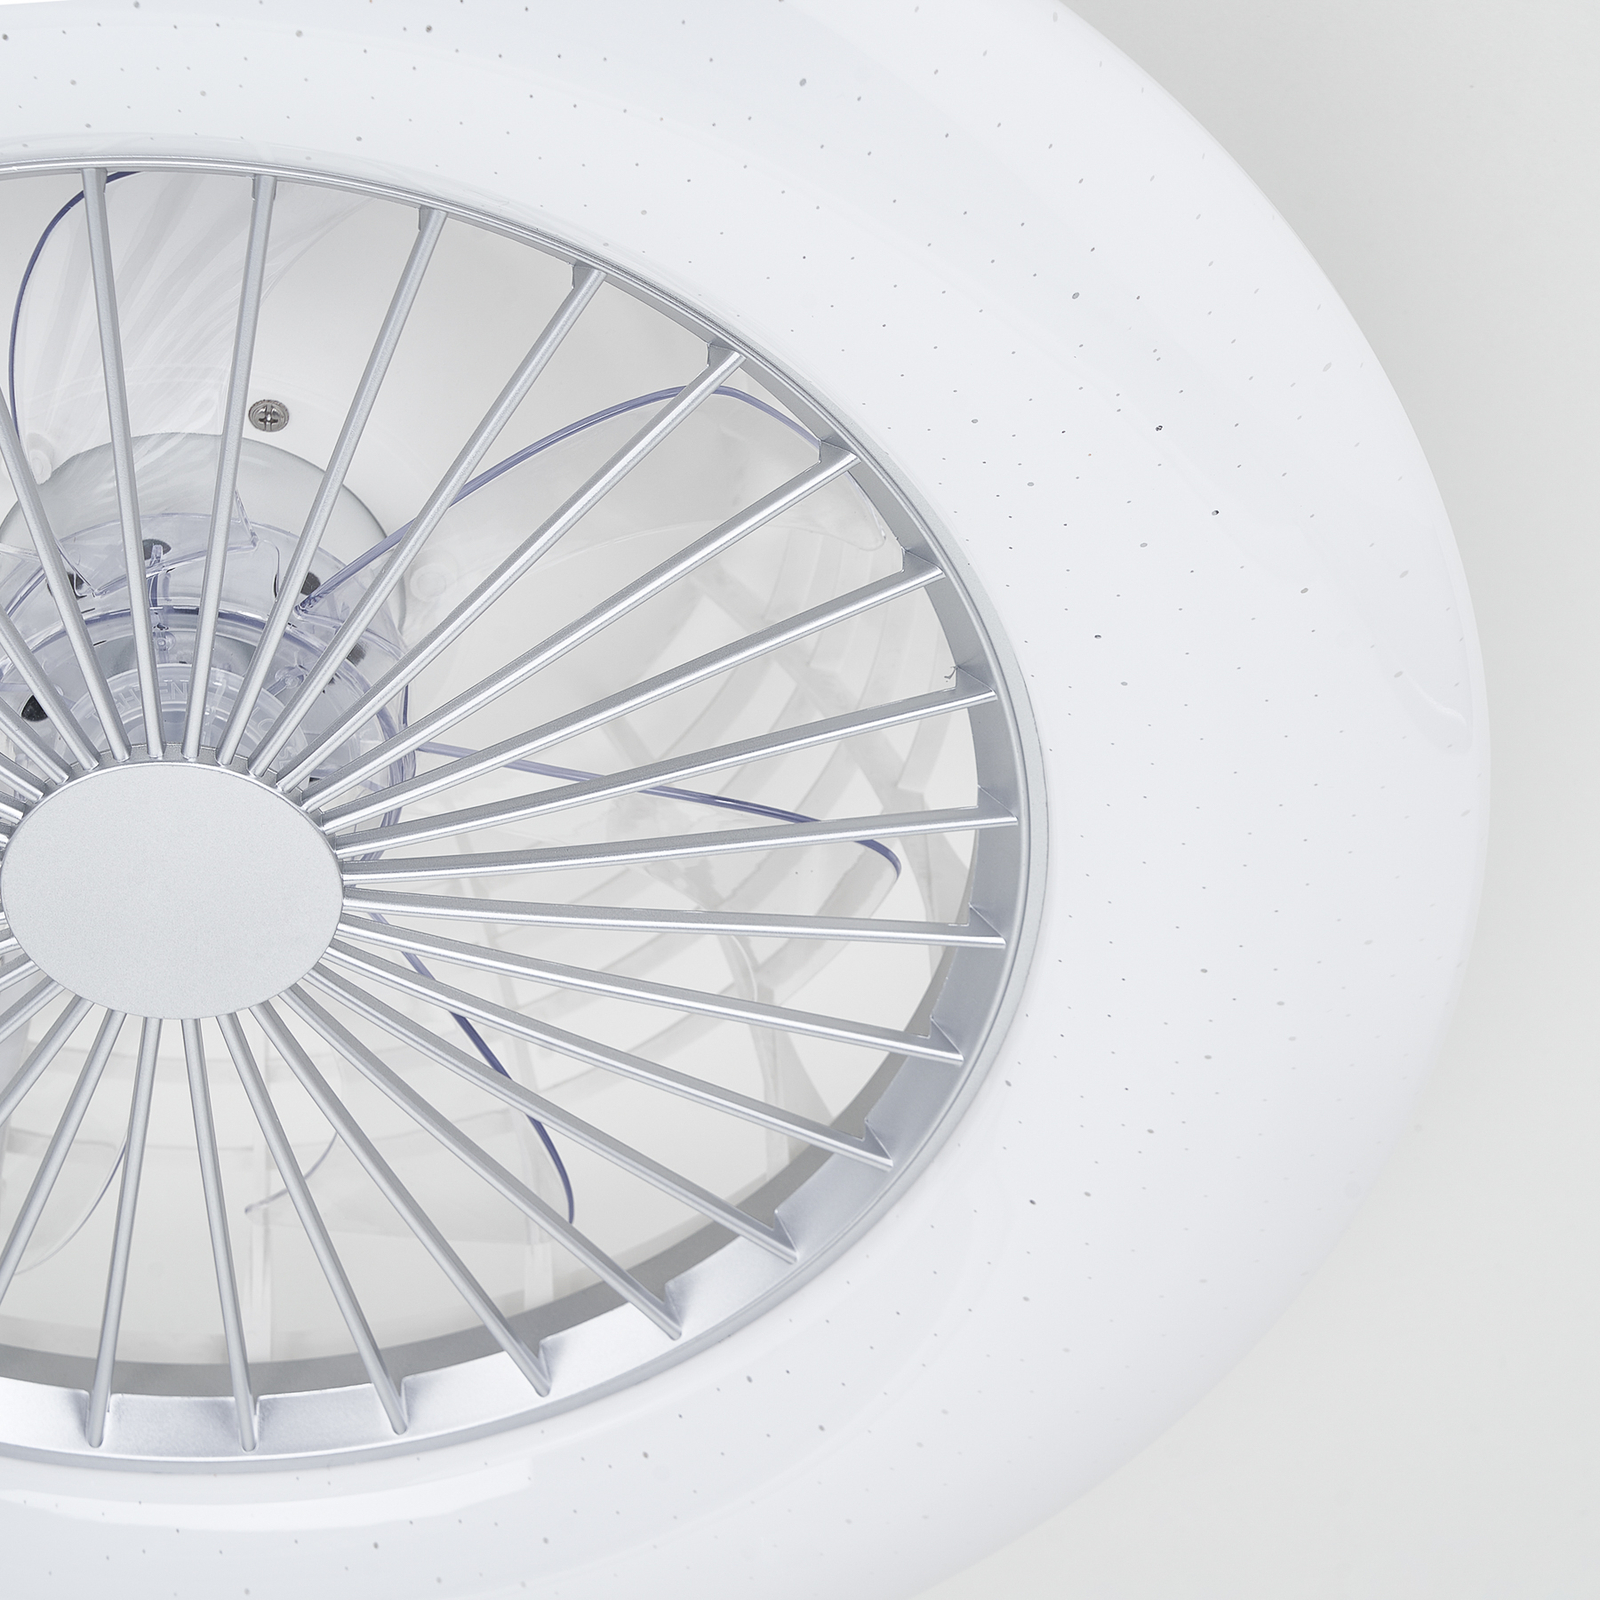 Starluna Taloni LED stropní ventilátor osvětlením